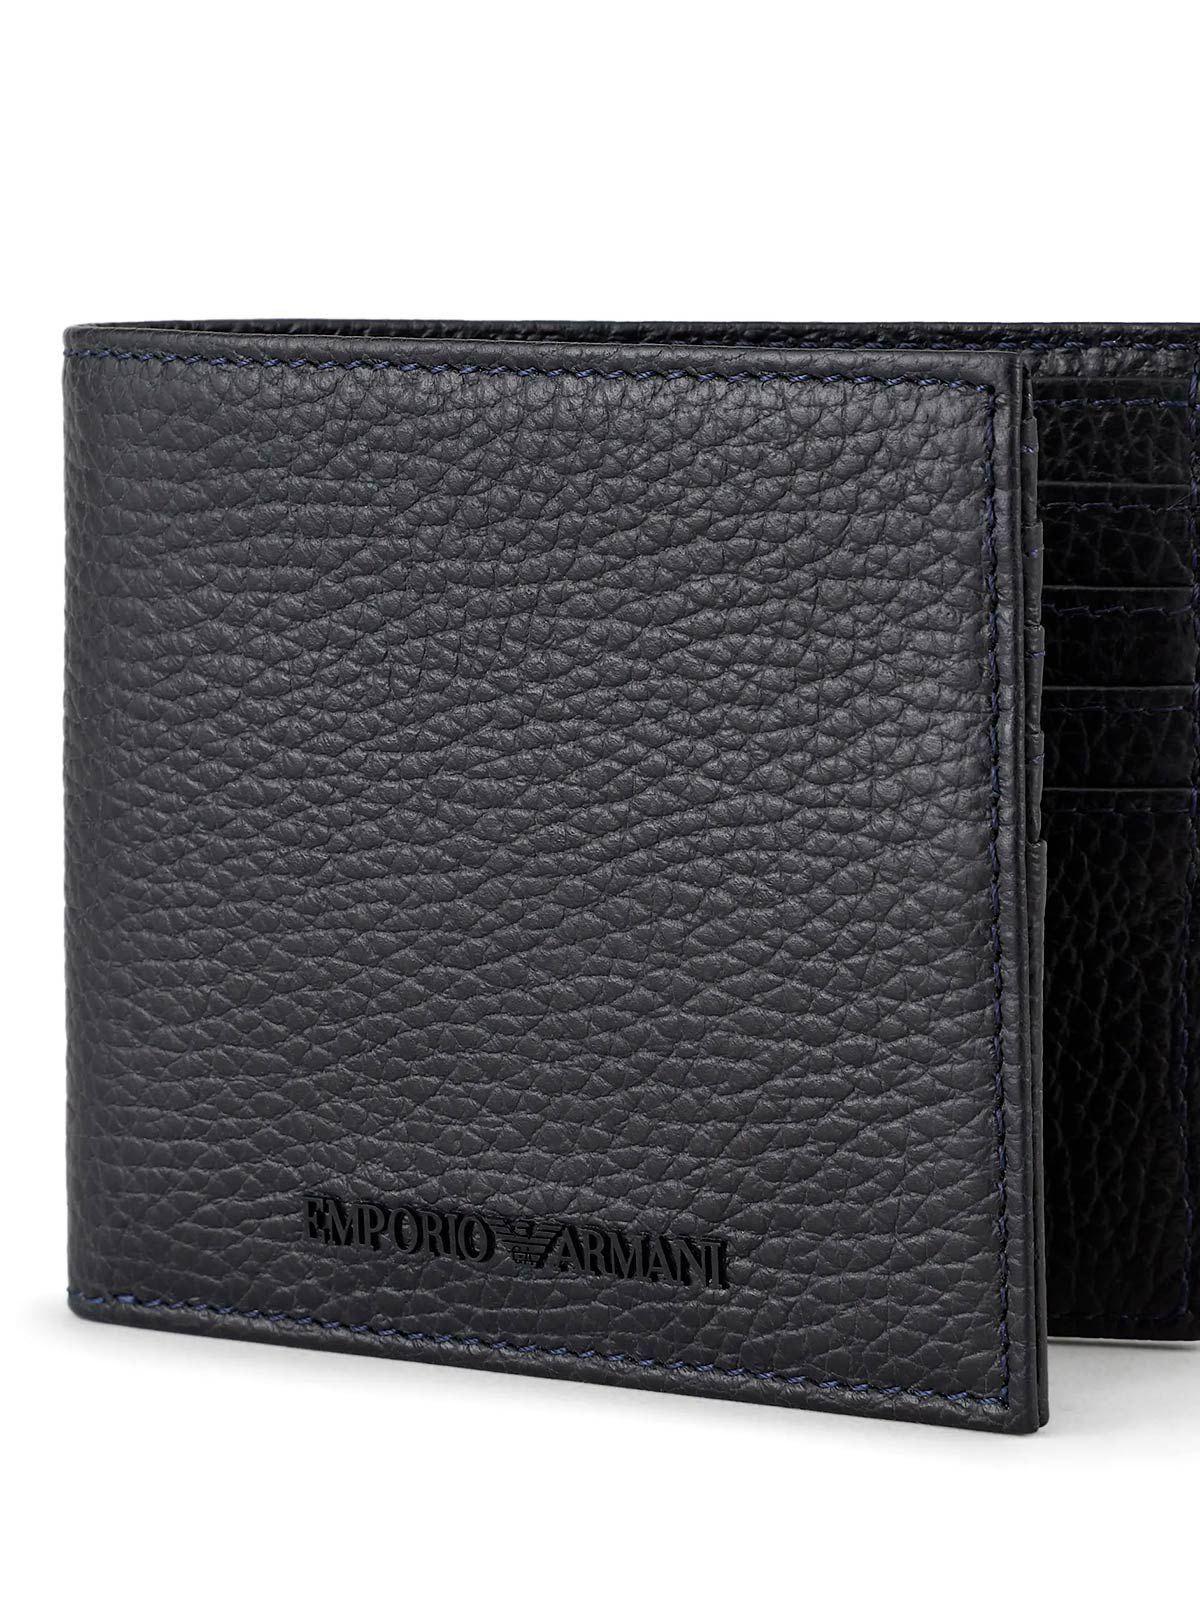 Emporio Armani Wallet in Black for Men | Lyst